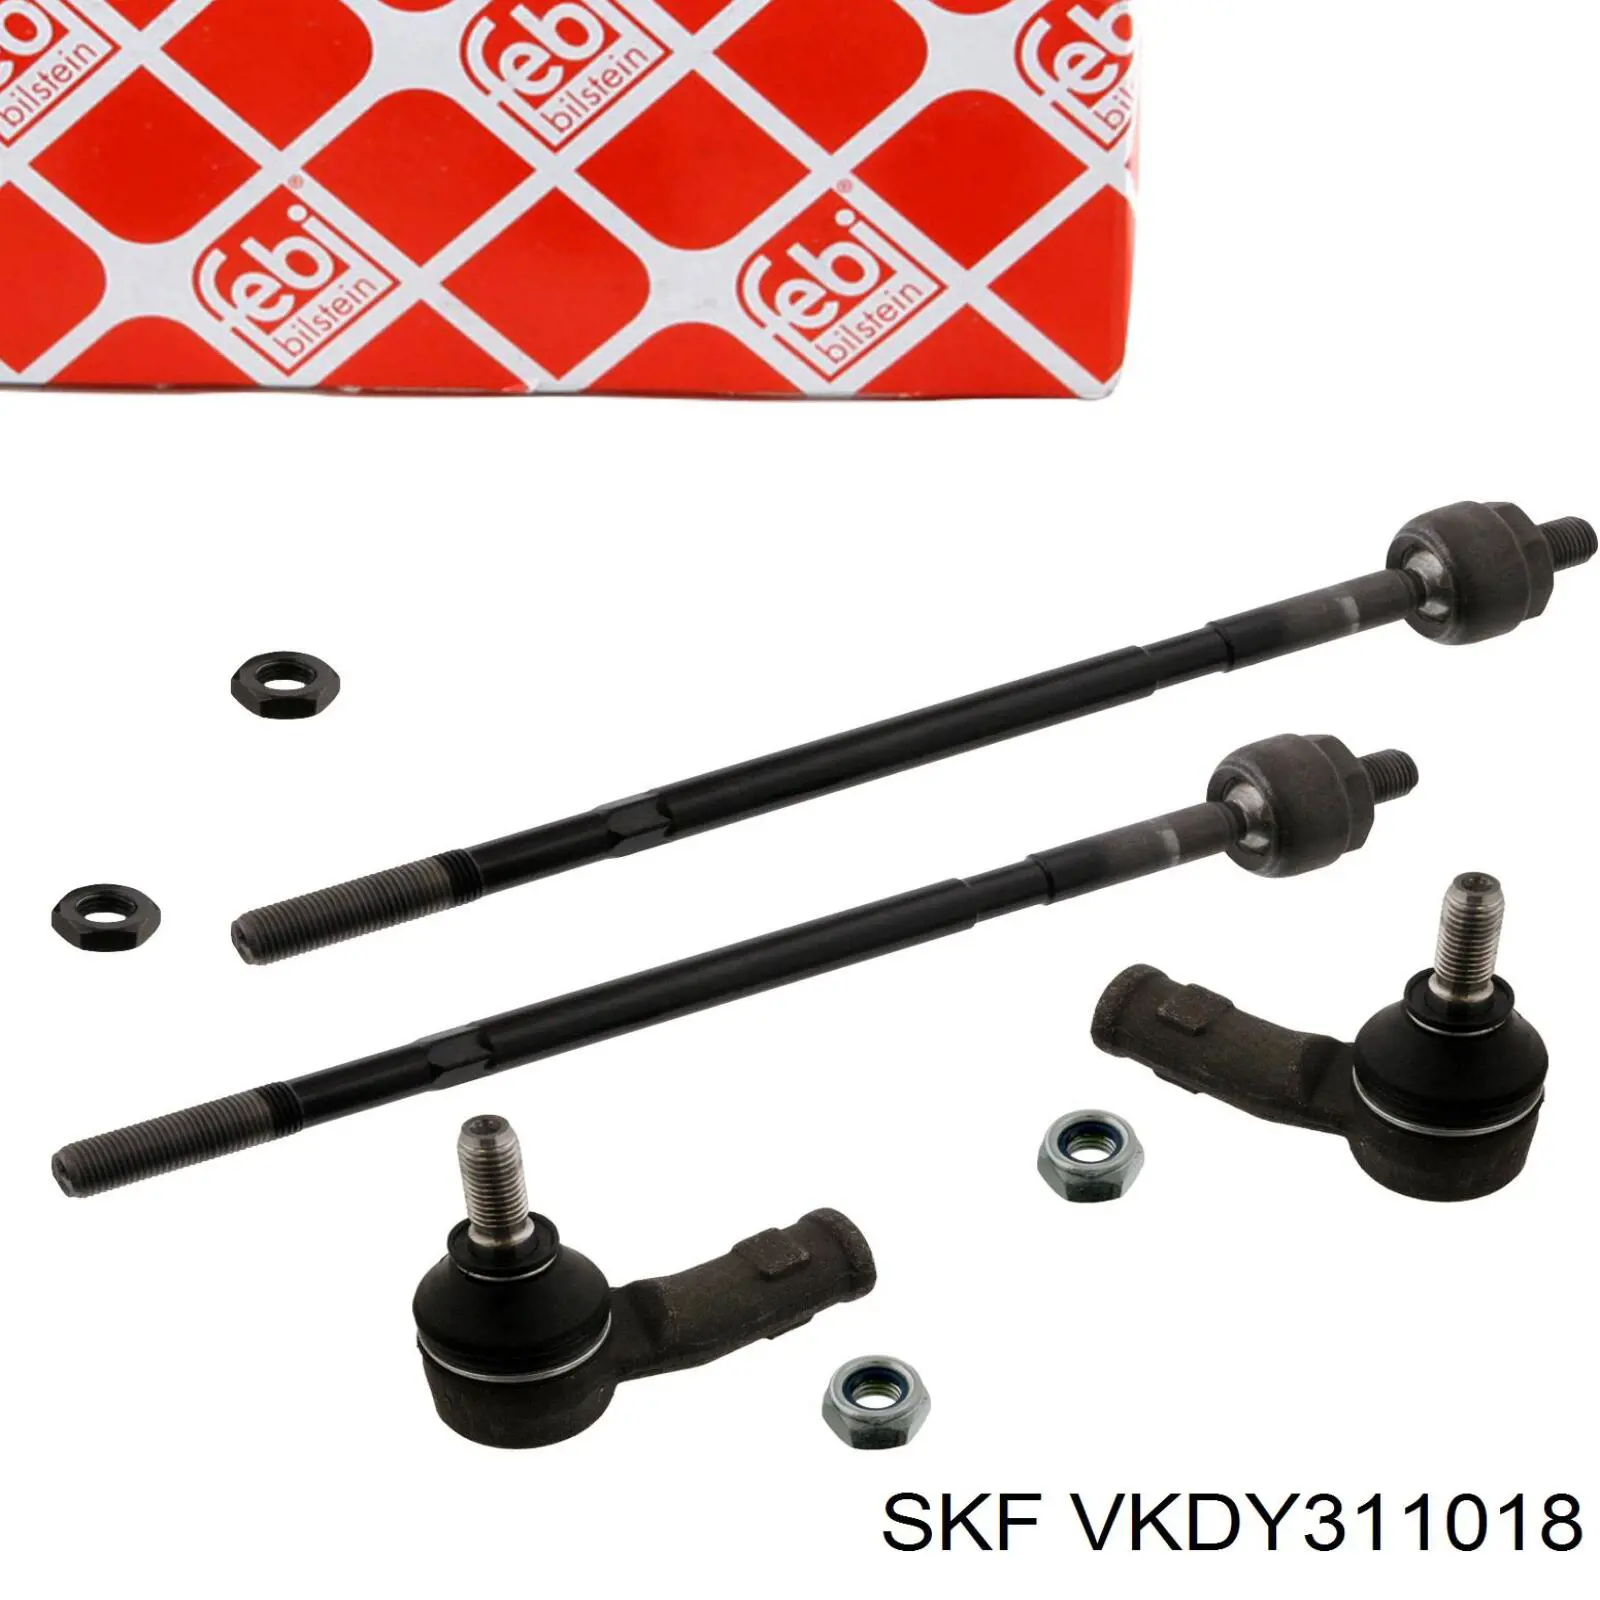 VKDY311018 SKF rótula barra de acoplamiento exterior